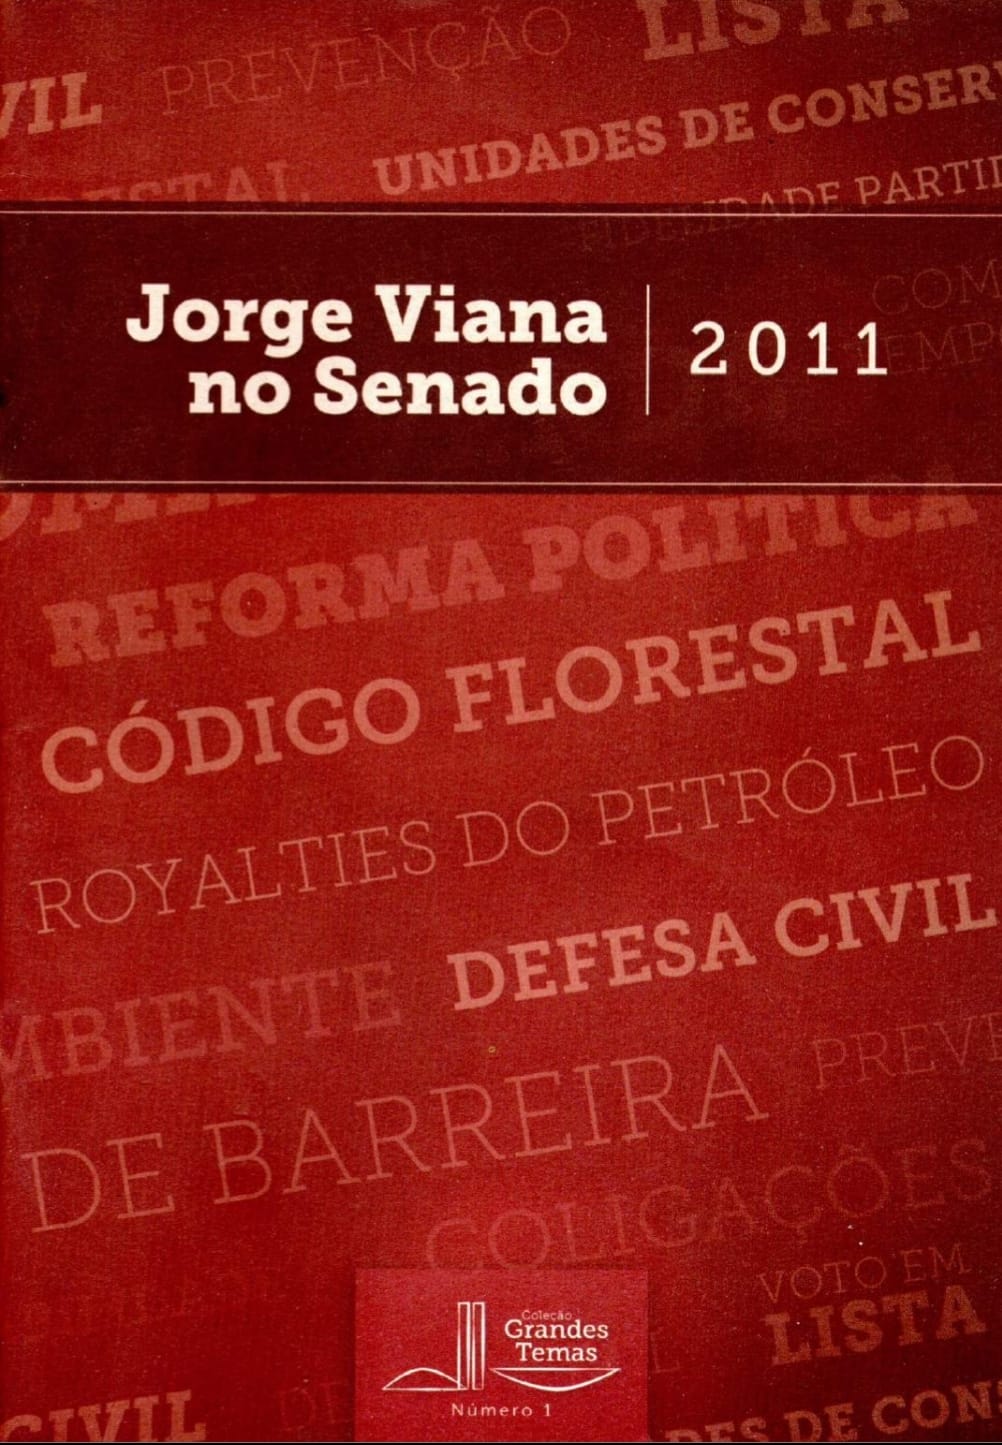 2011 em revista: o início de um mandato relevante para o Acre e para o Brasil